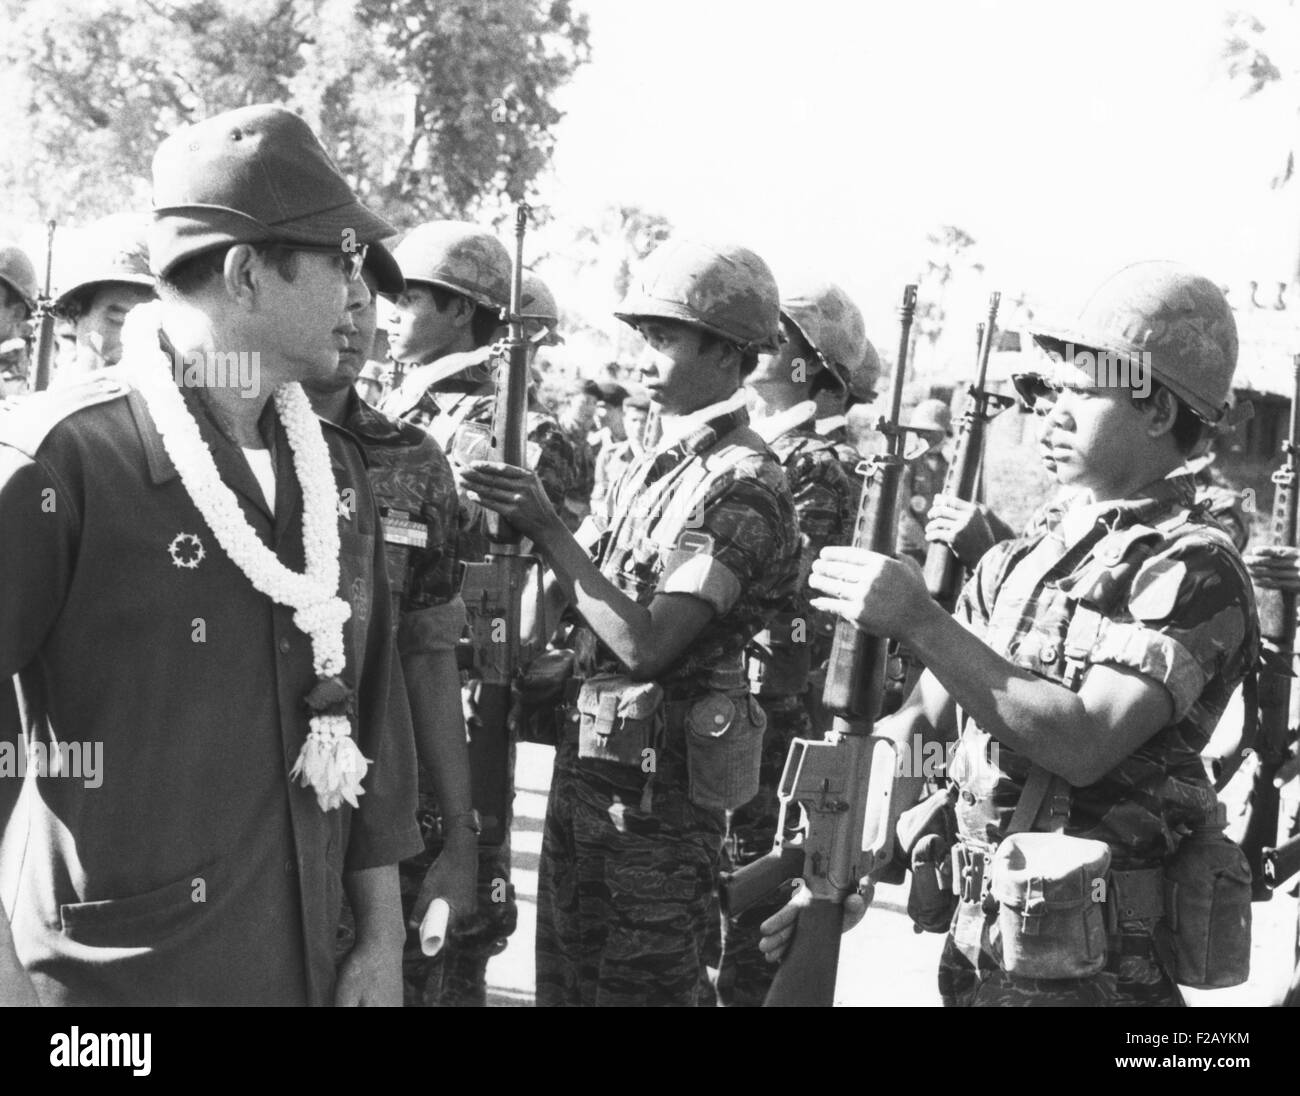 Président du Cambodge critiques de Lon Nol les troupes gouvernementales le 28 novembre 1973. Le gouvernement de Lon Nol était dépendante de l'aide américaine et insurgés khmers rouges prenaient plus de grandes parties du pays. CSU (2015  9 766) Banque D'Images